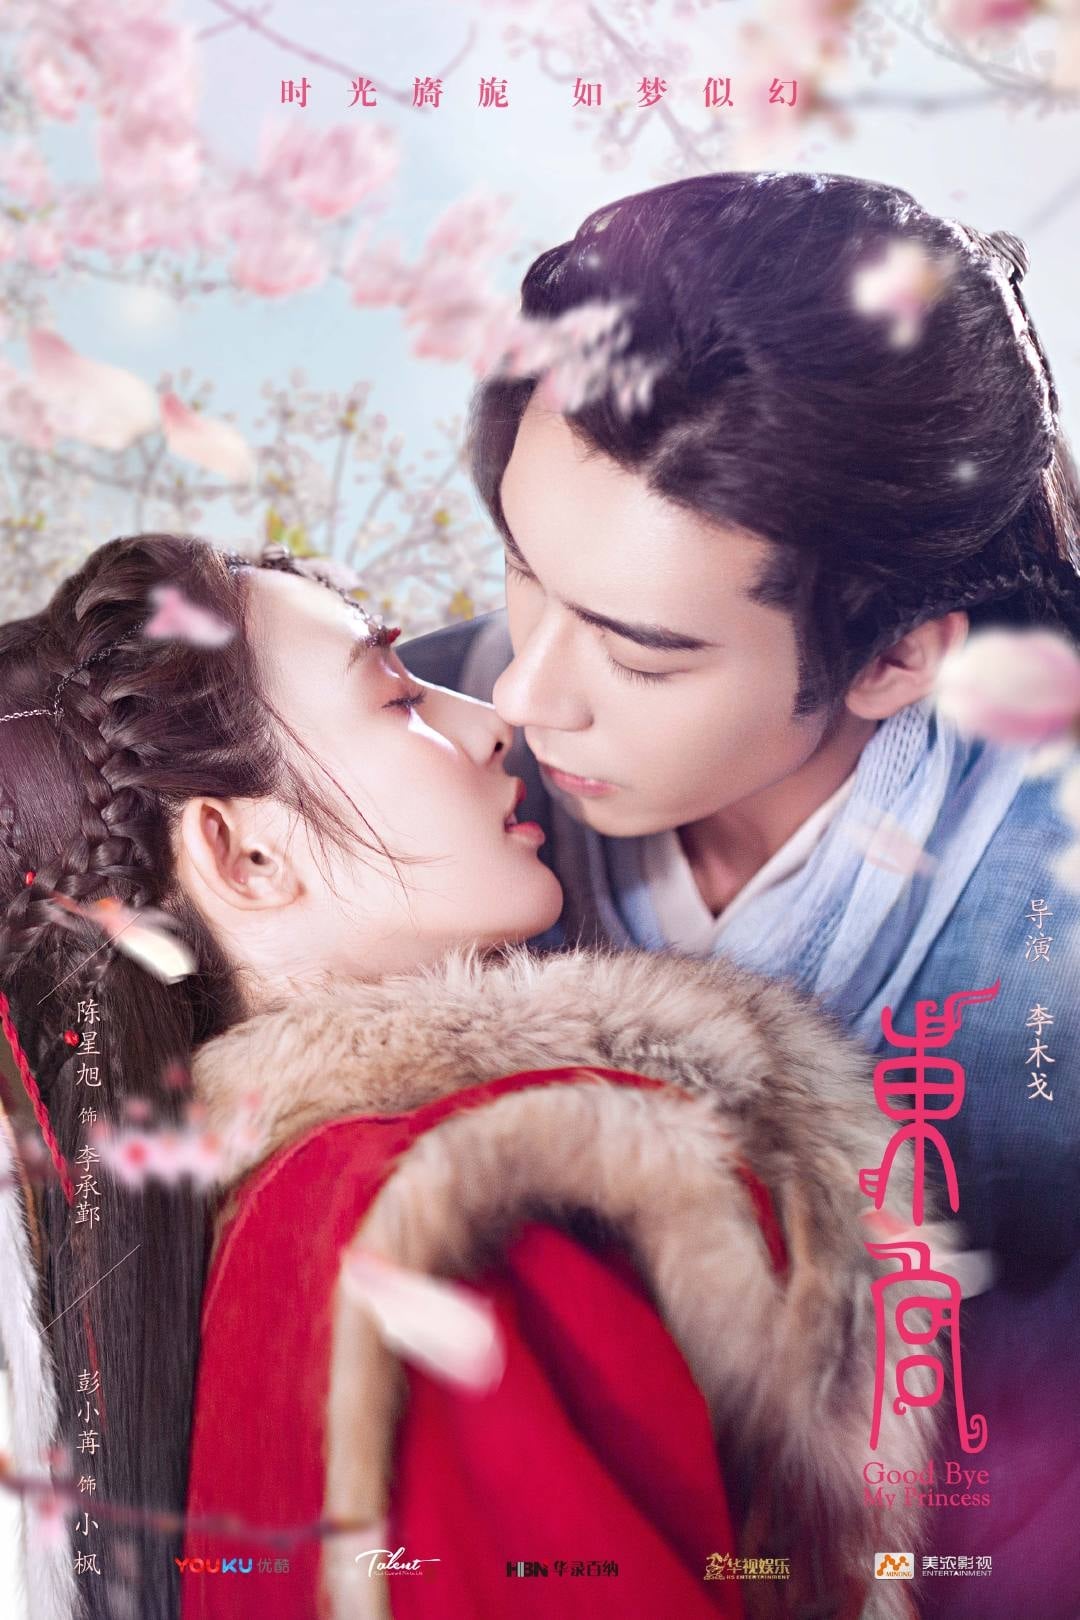 Movie Đông Cung - Good Bye My Princess (2019)